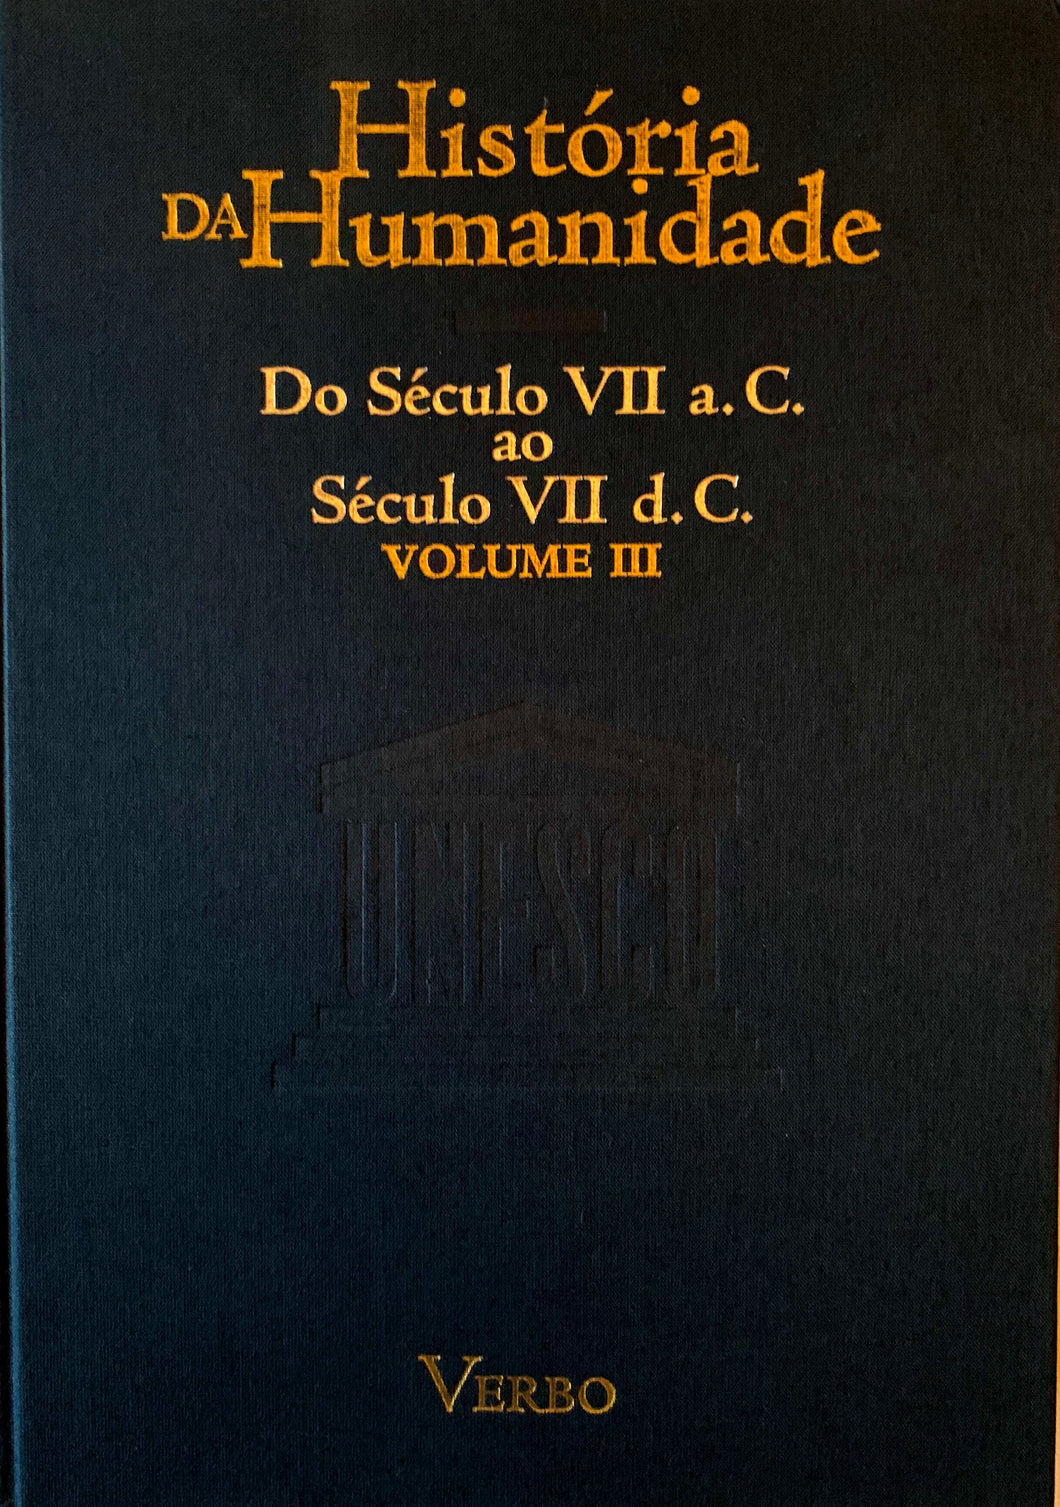 História da Humanidade - Vol. III: Do Século VII a.C. ao Século VII d.C.